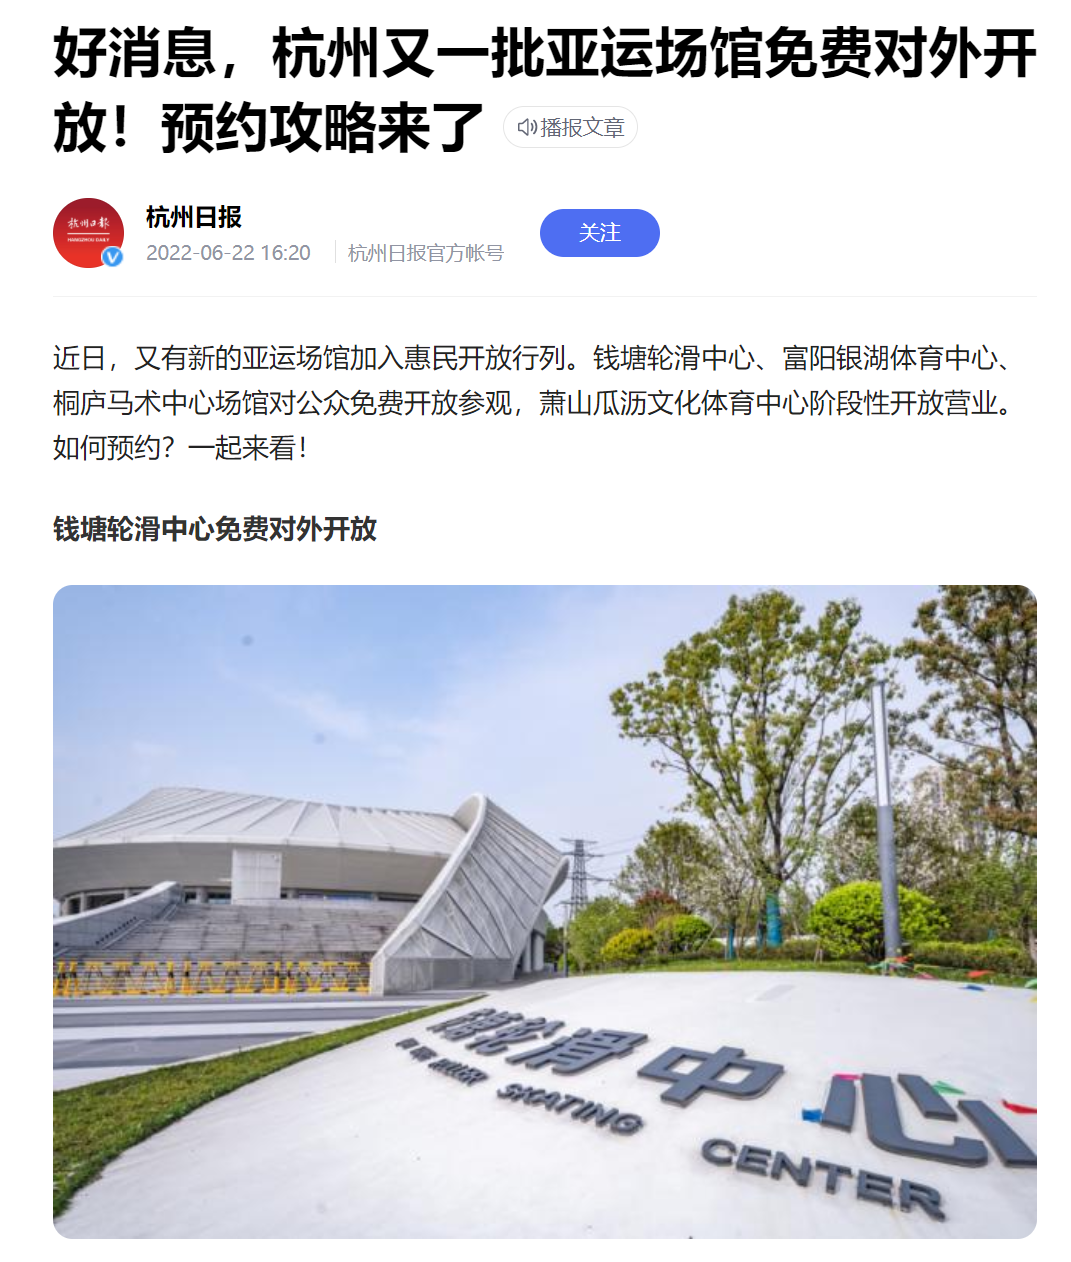 杭州|杭州亚组委宣布开放场馆喜讯，亚运会好事成双，国人振奋点赞